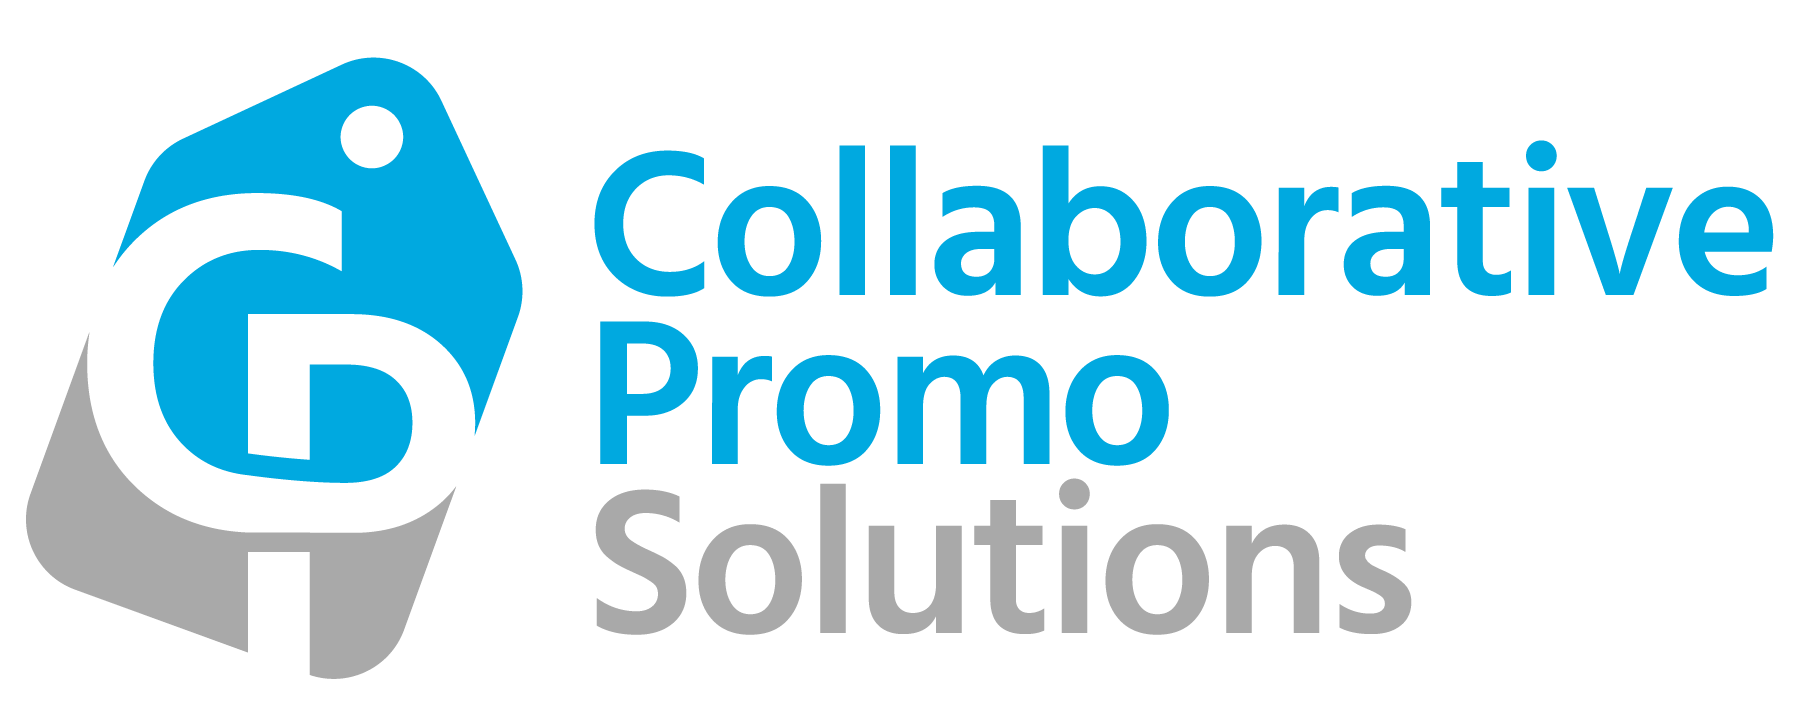 Collaborative Promo Solutions's Logo